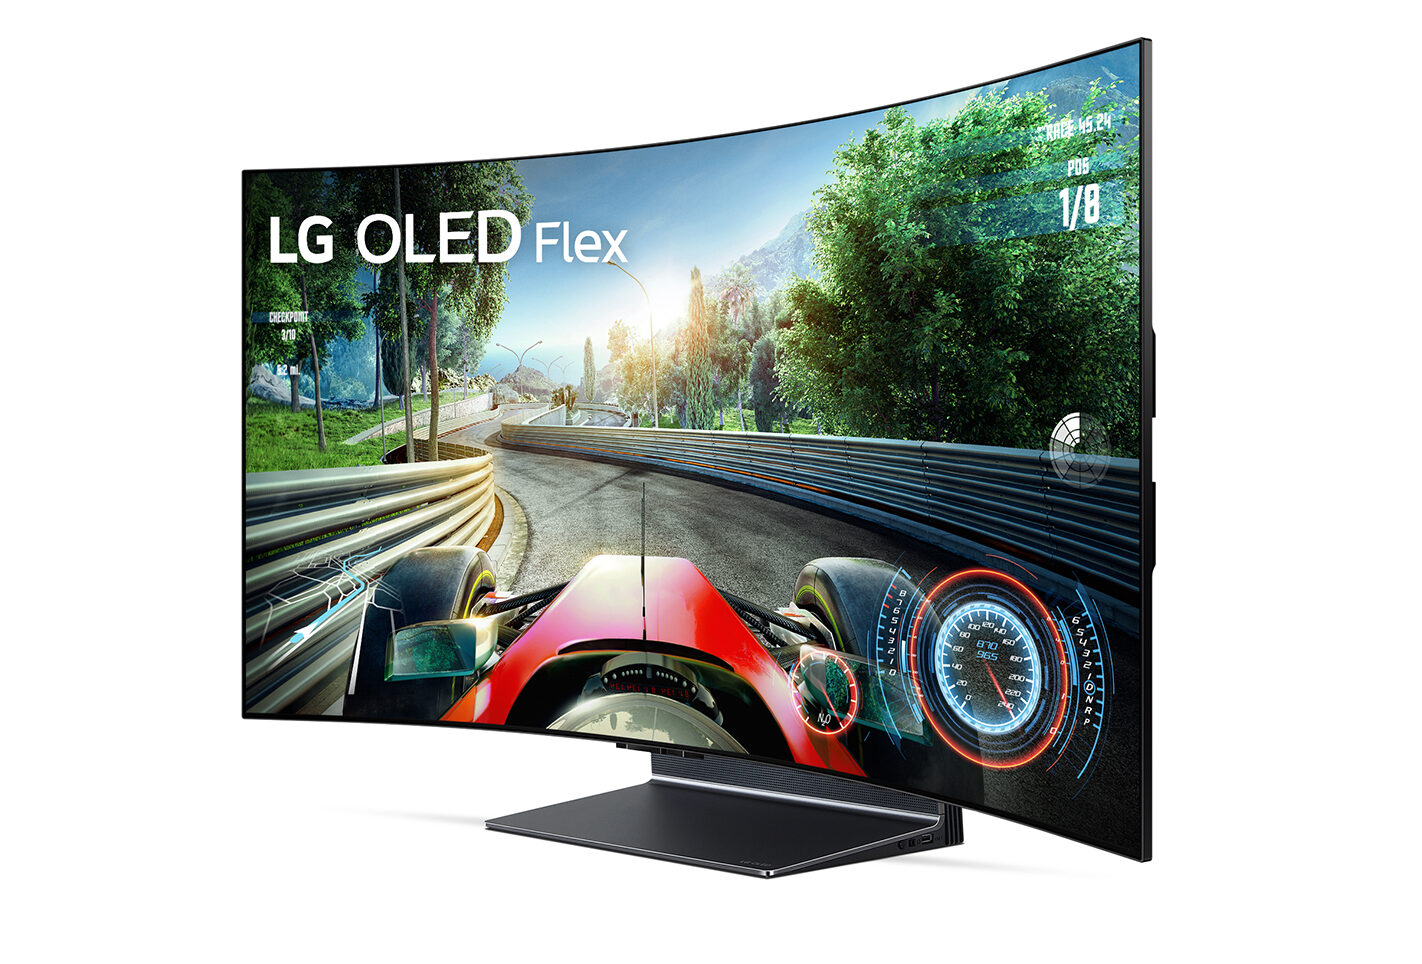 Екран телевізора LG OLED Flex LX3 вигинається кнопкою на пульті